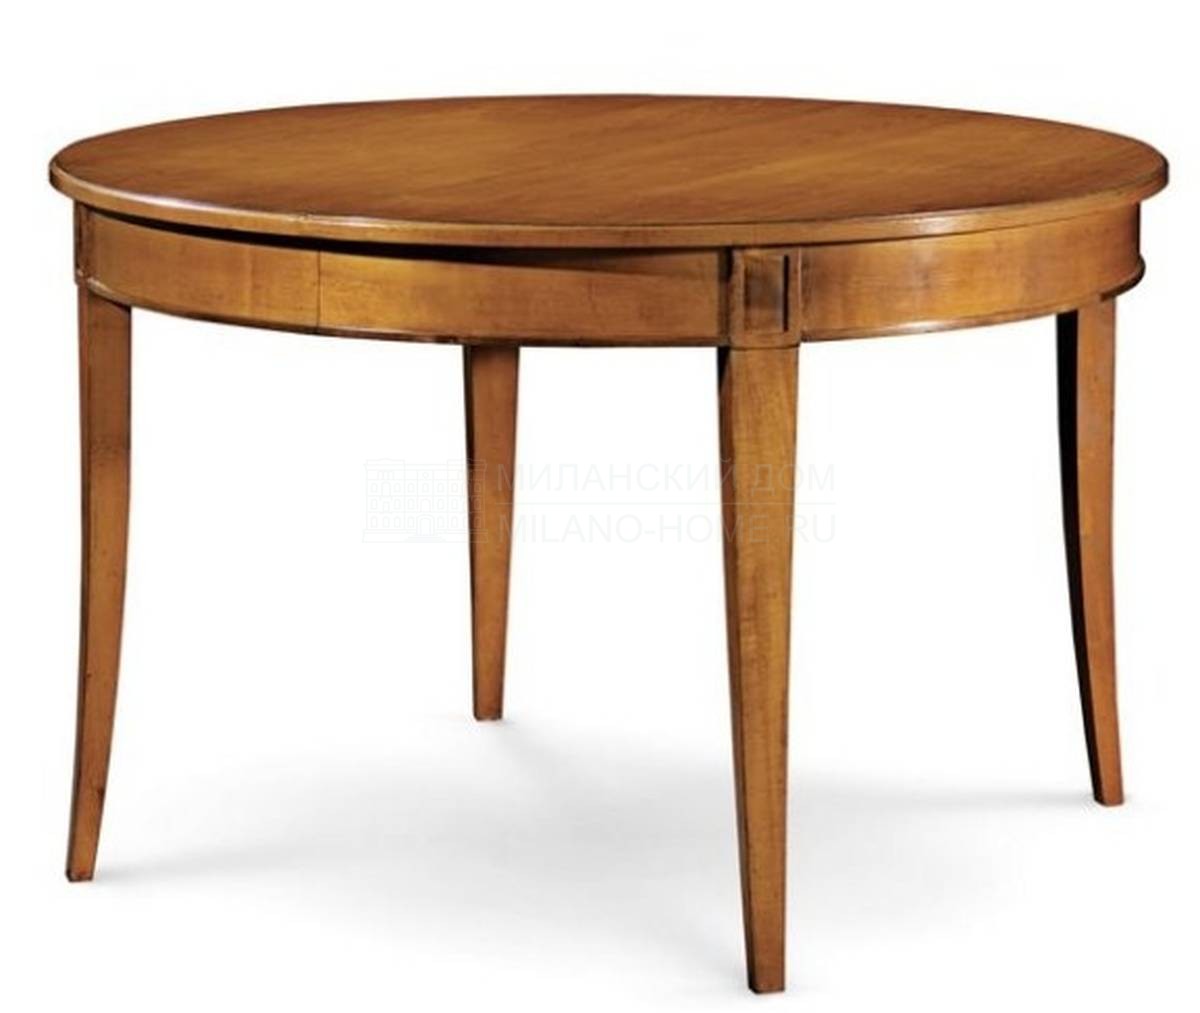 Стол из массива Hauteville round dining table из Франции фабрики ROCHE BOBOIS